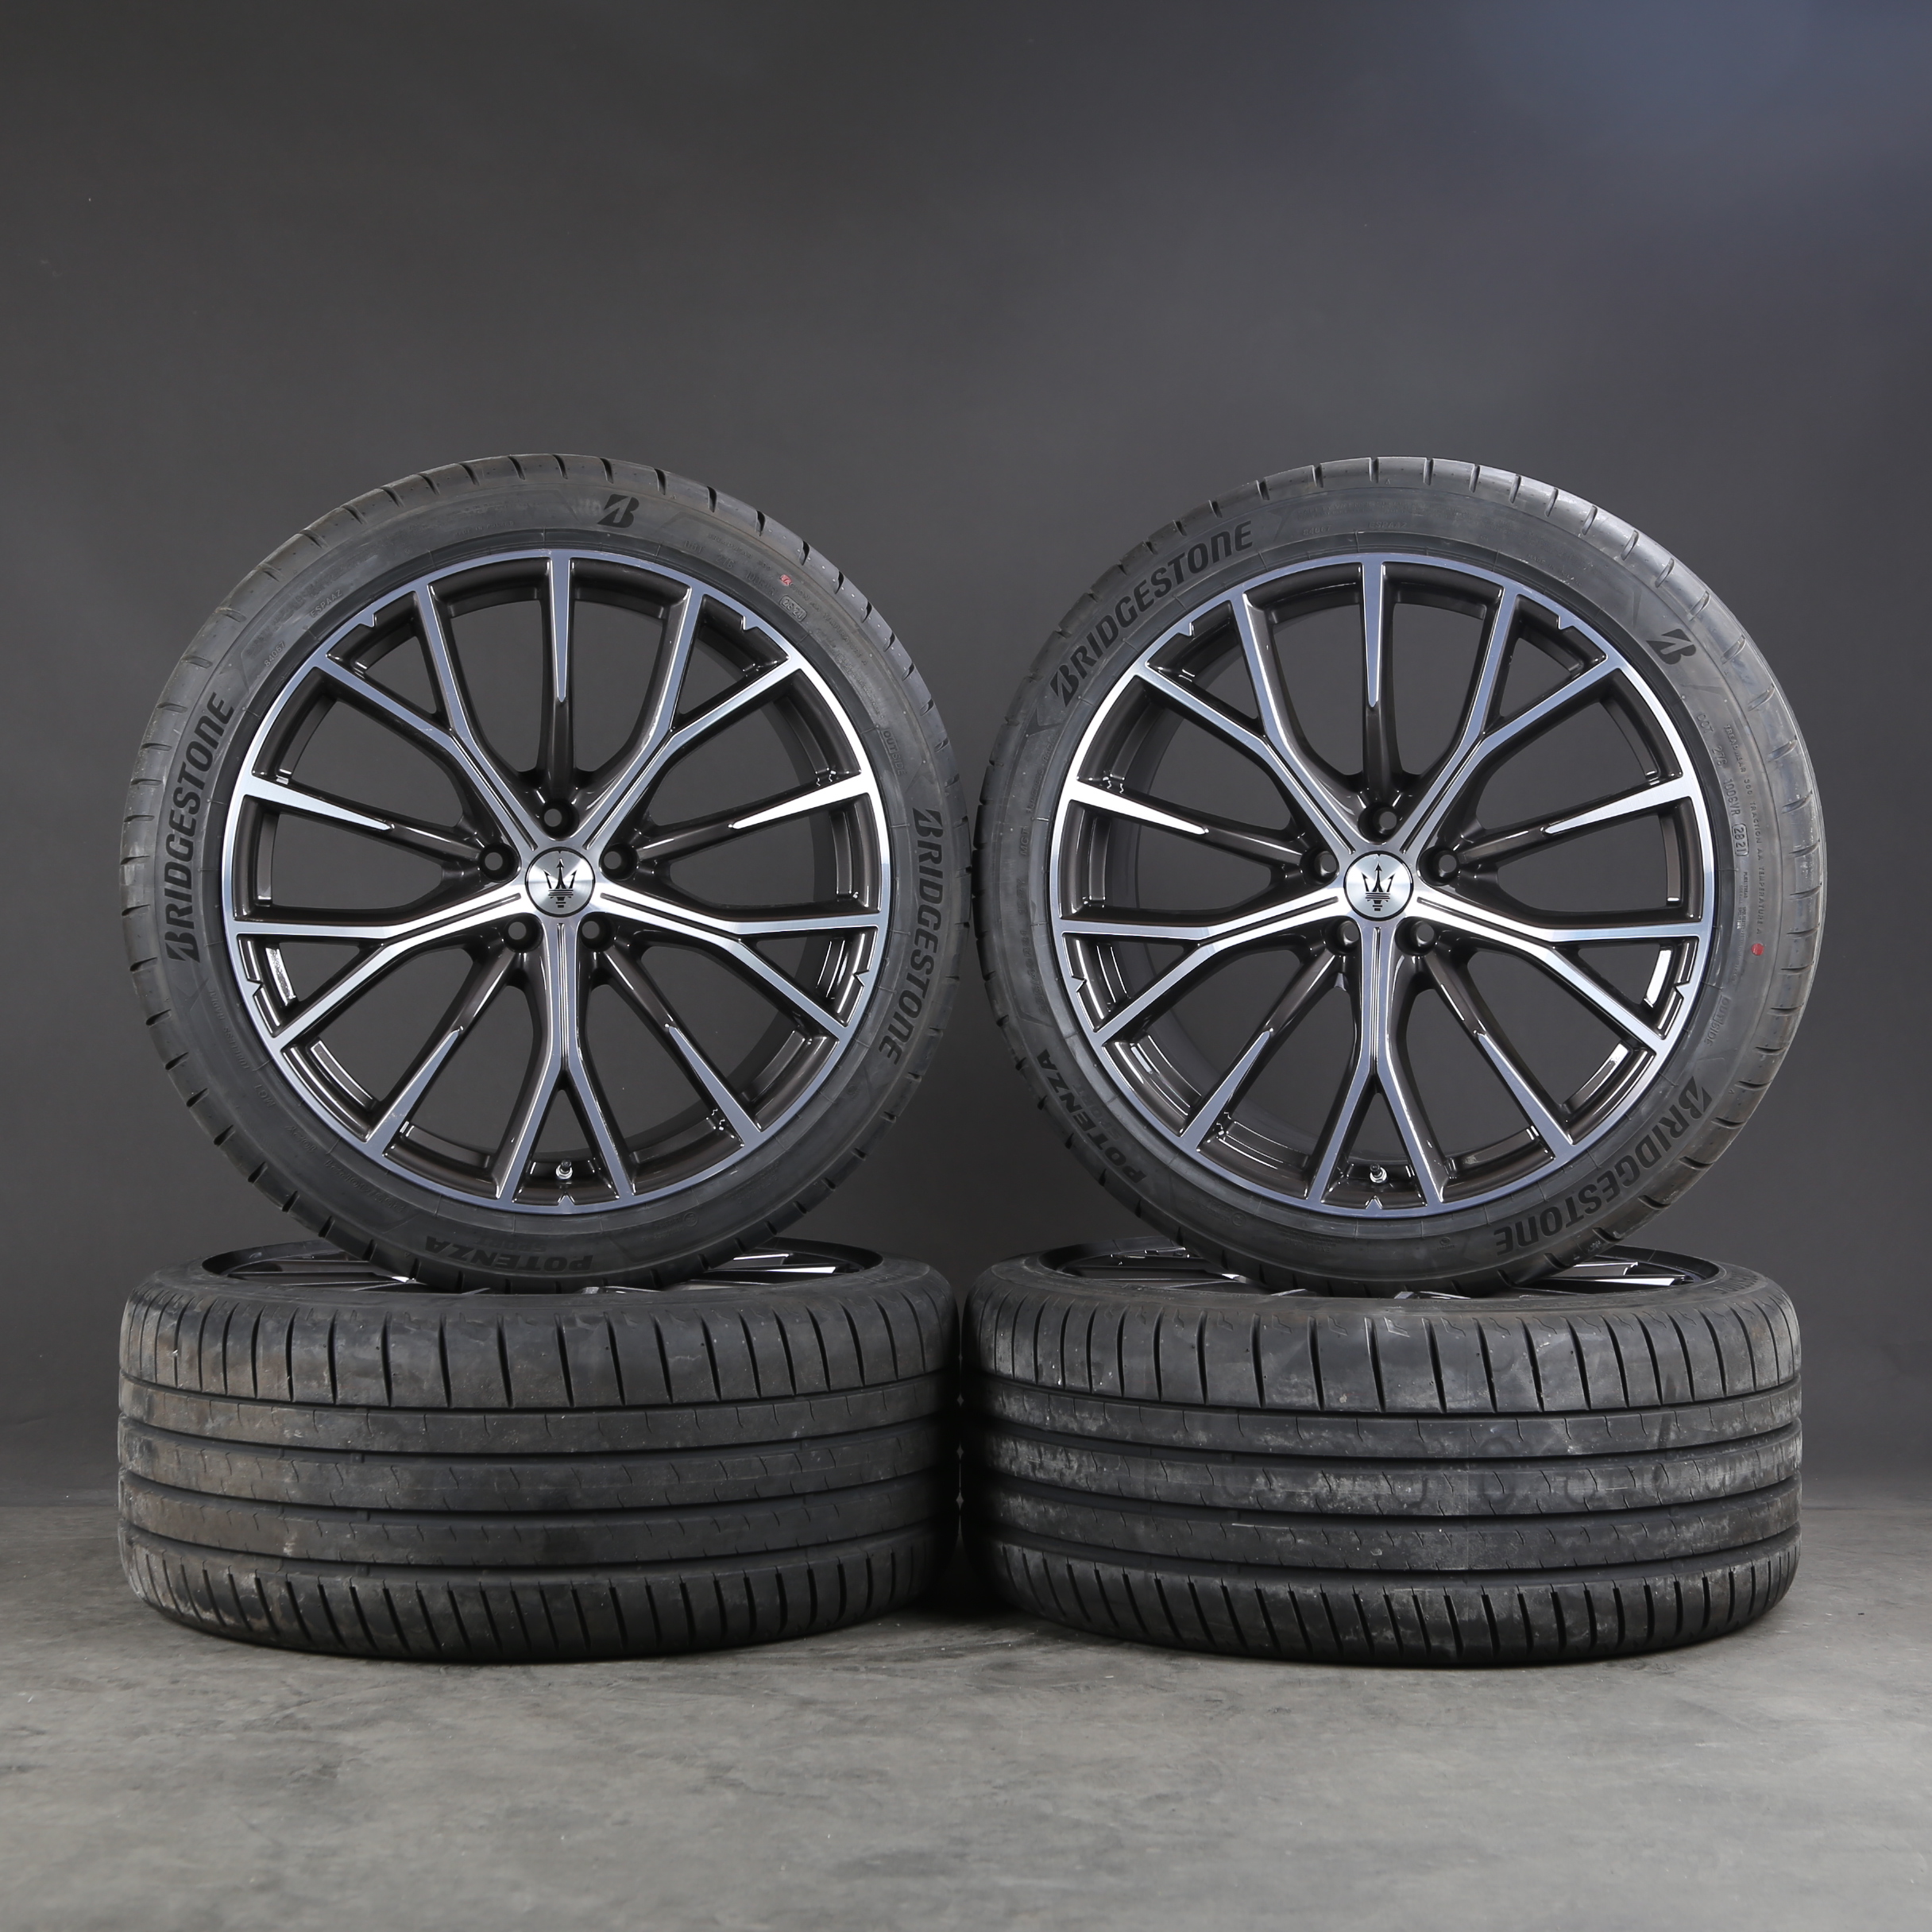 Llantas de verano de 21 pulgadas originales Maserati Grecale 670171185 Neumáticos de verano